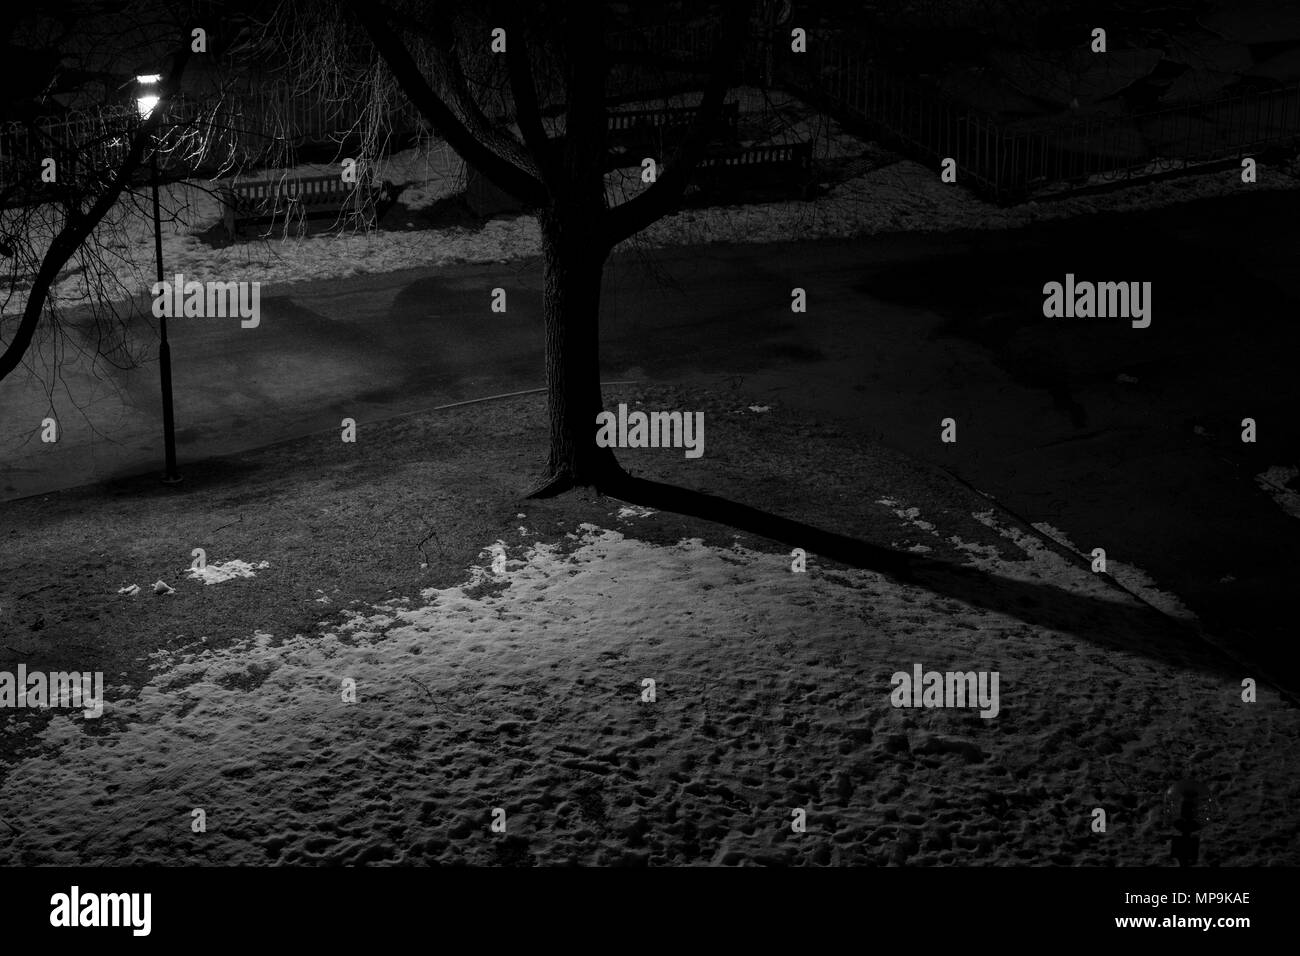 Une photo en noir et blanc d'une nuit, lumière d'un arbre et un peu de neige sur le terrain Banque D'Images